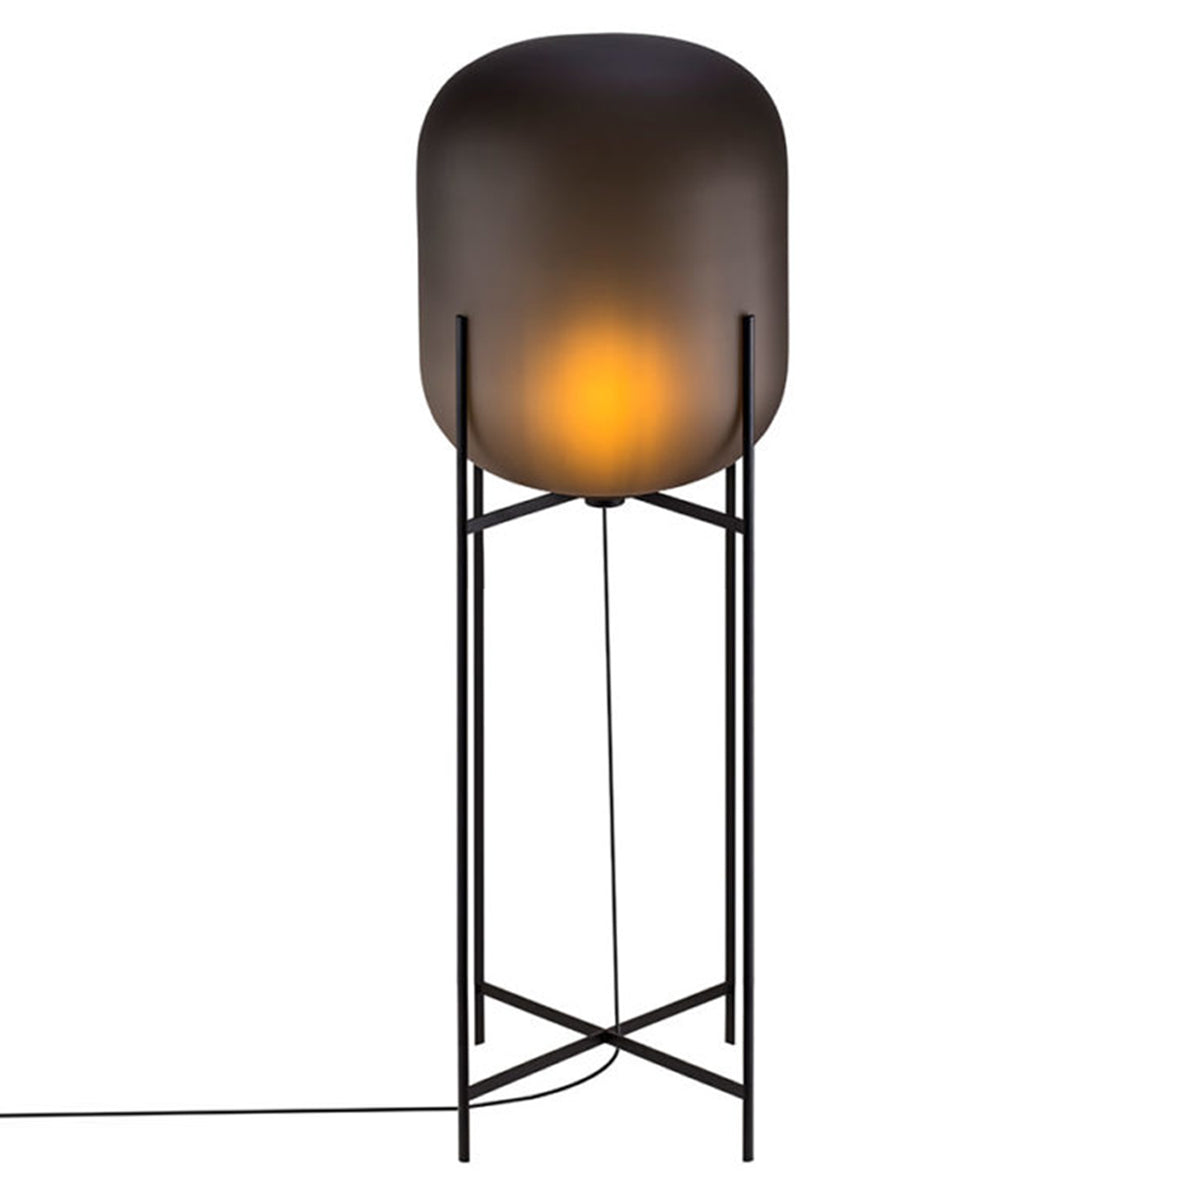 Oda Floor Lamp: Big - 55.1